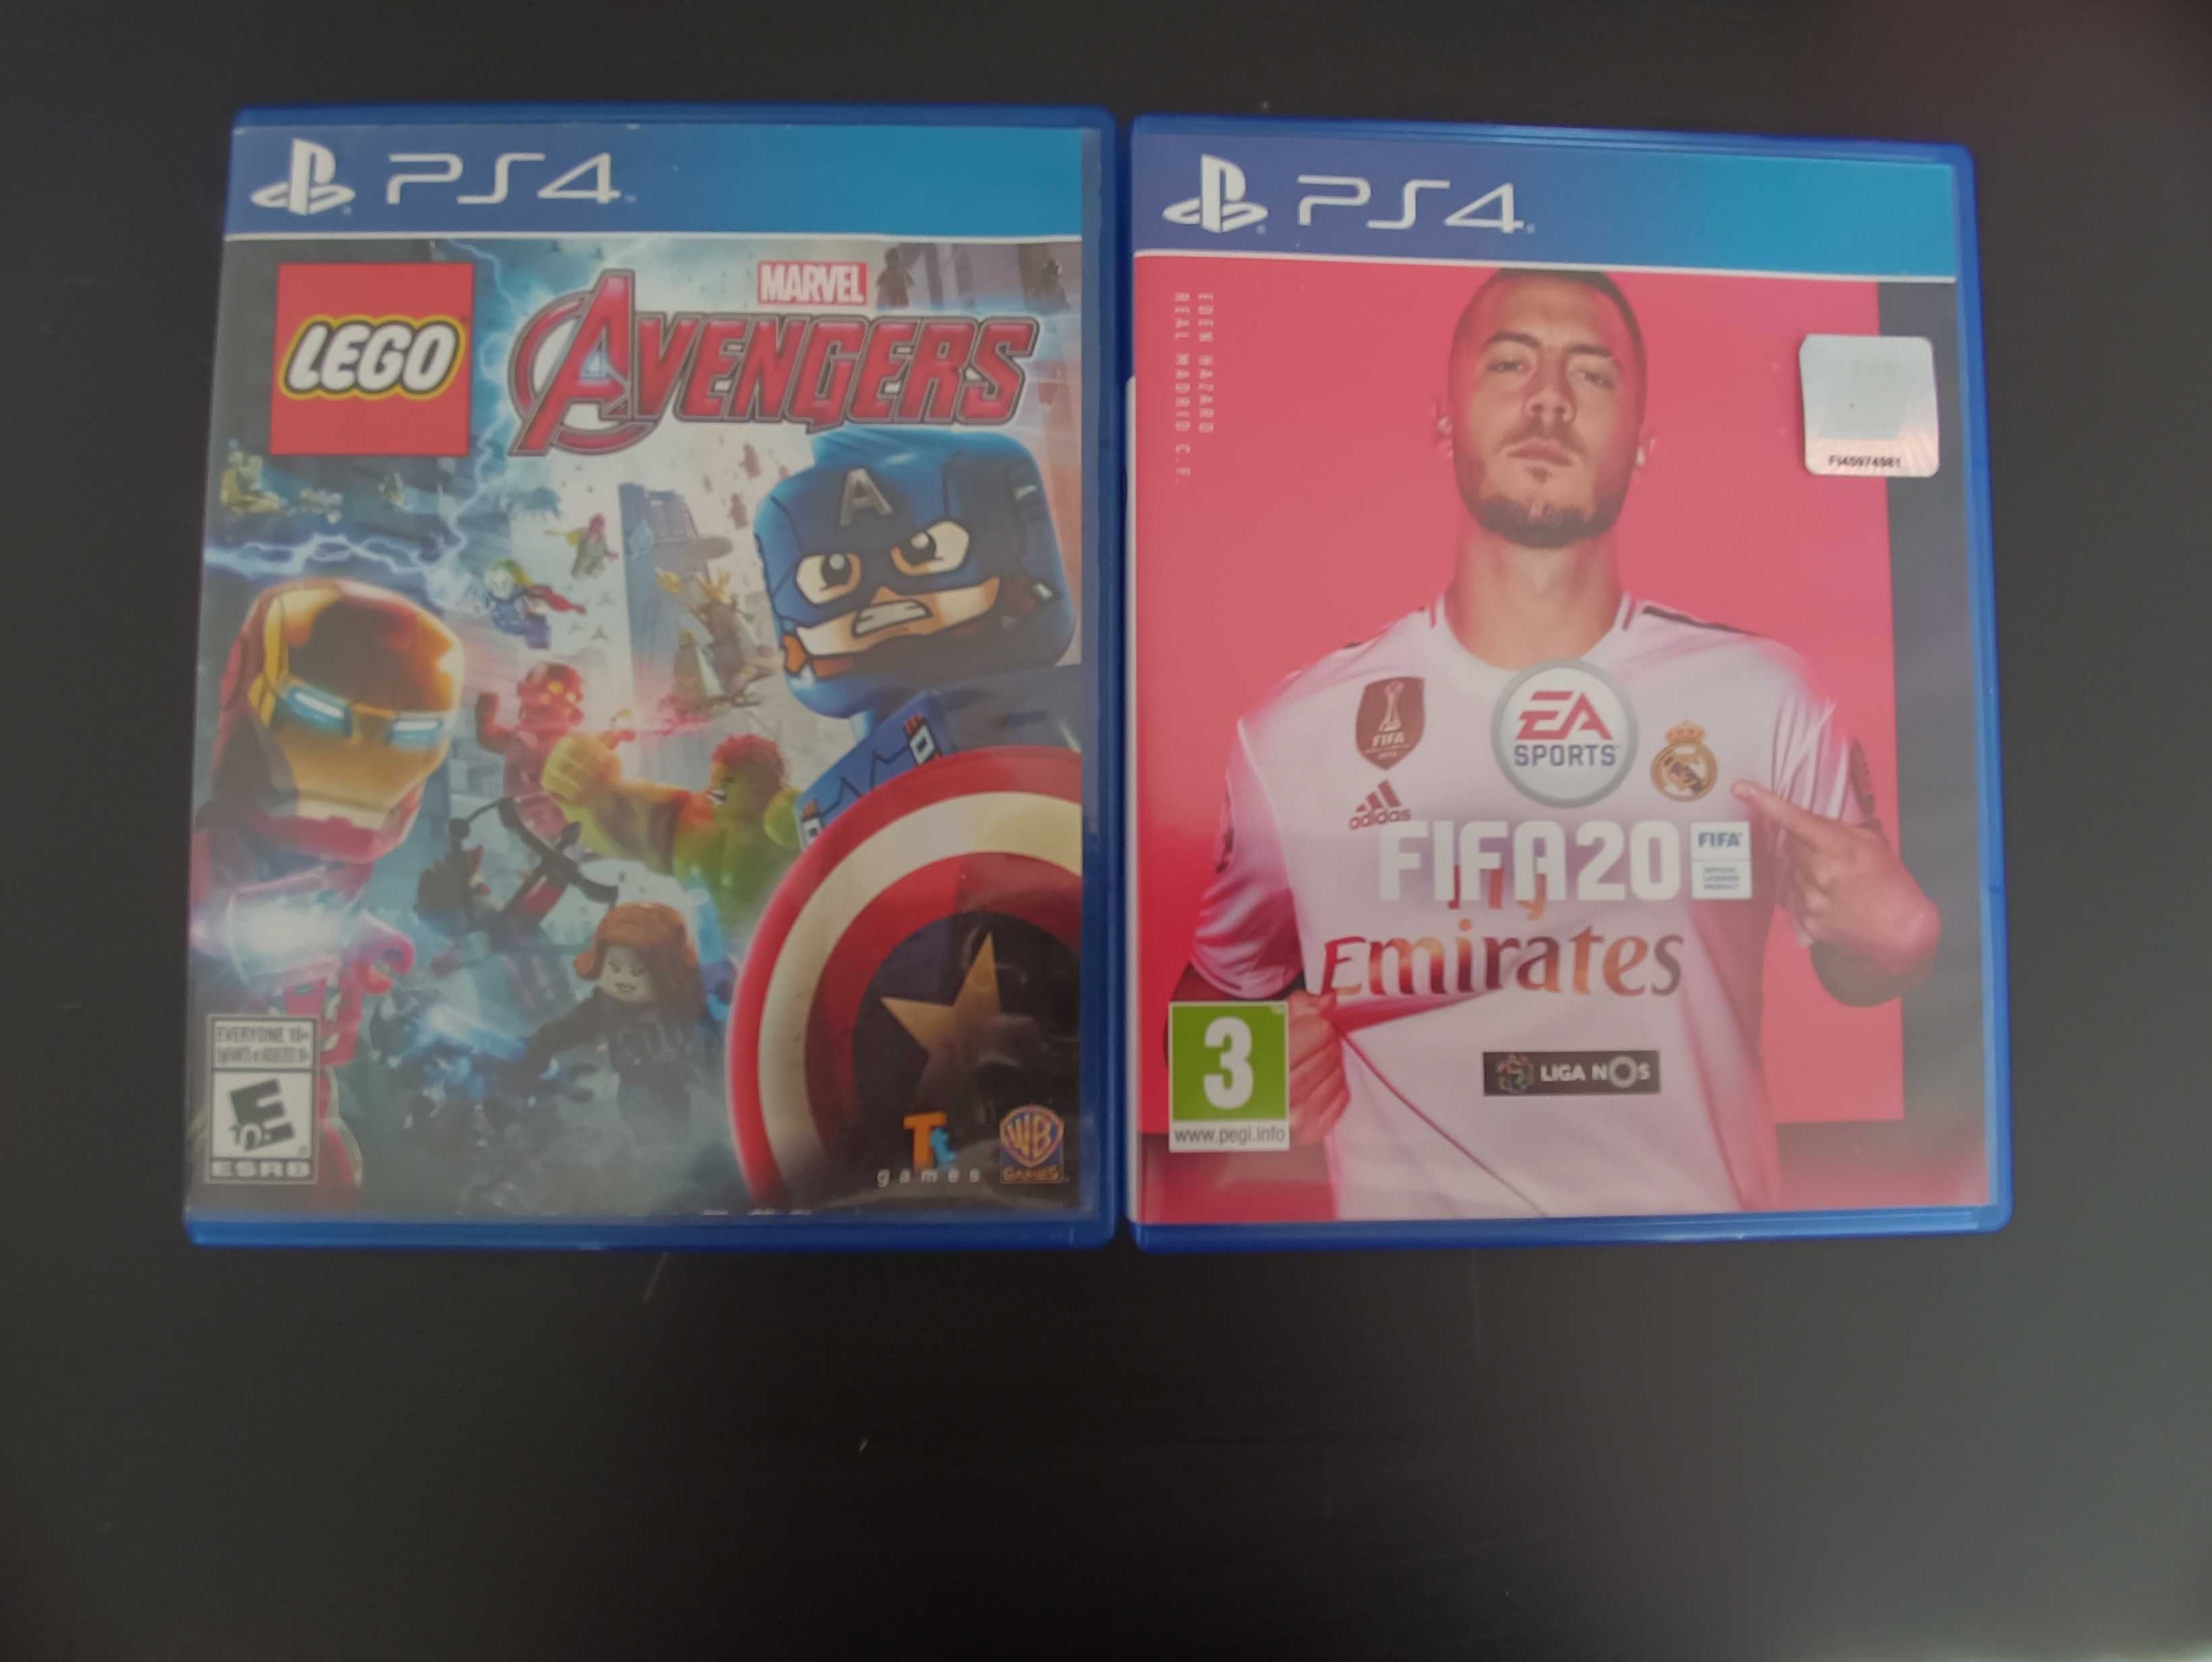 2-Pack Jogos Lego Avengers é FIFA20 para PS4